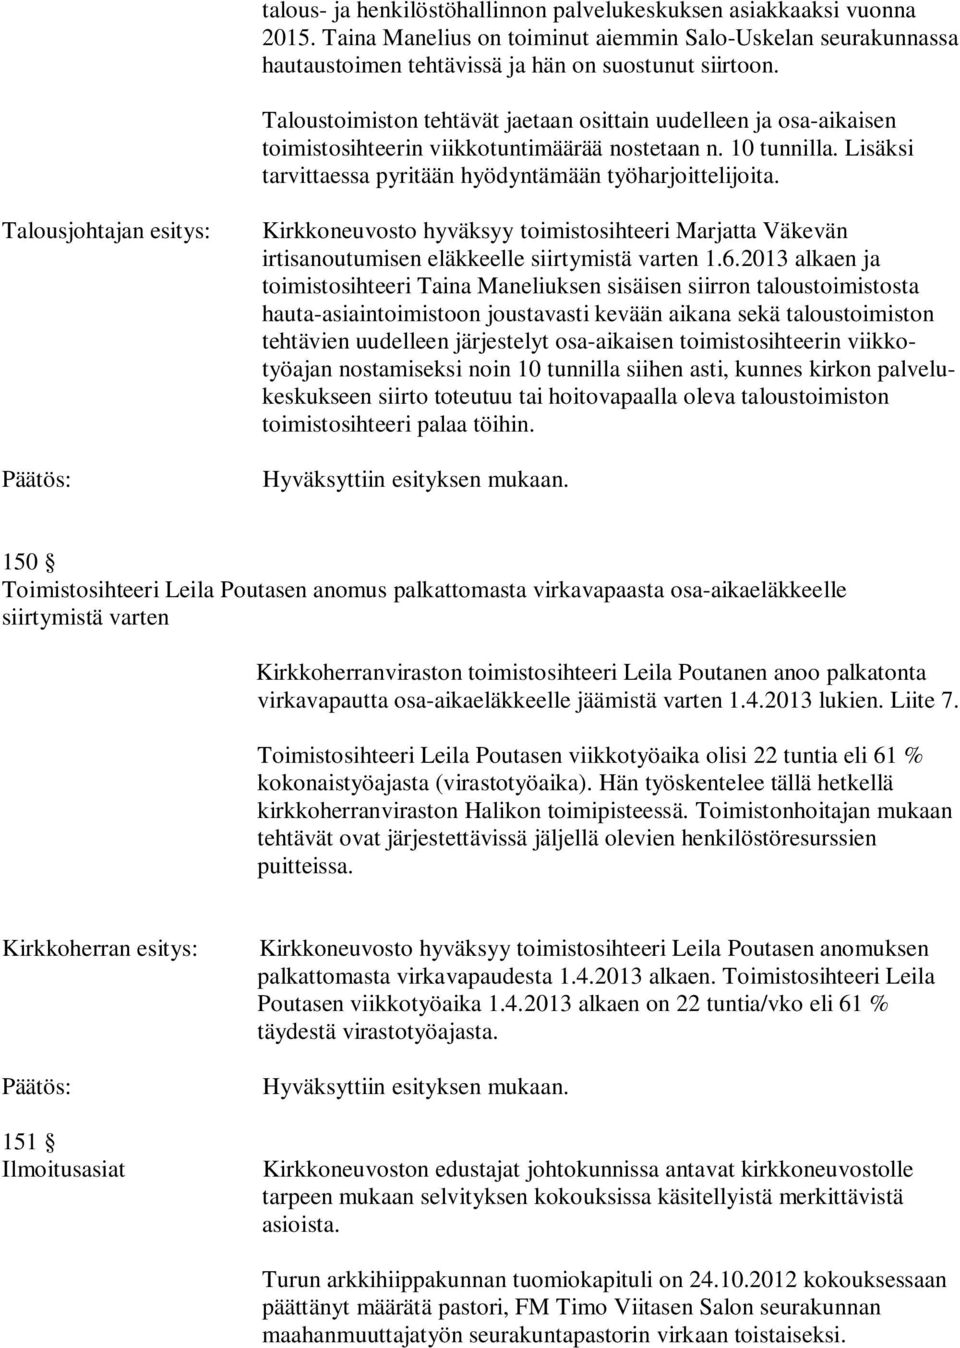 Talousjohtajan esitys: Kirkkoneuvosto hyväksyy toimistosihteeri Marjatta Väkevän irtisanoutumisen eläkkeelle siirtymistä varten 1.6.